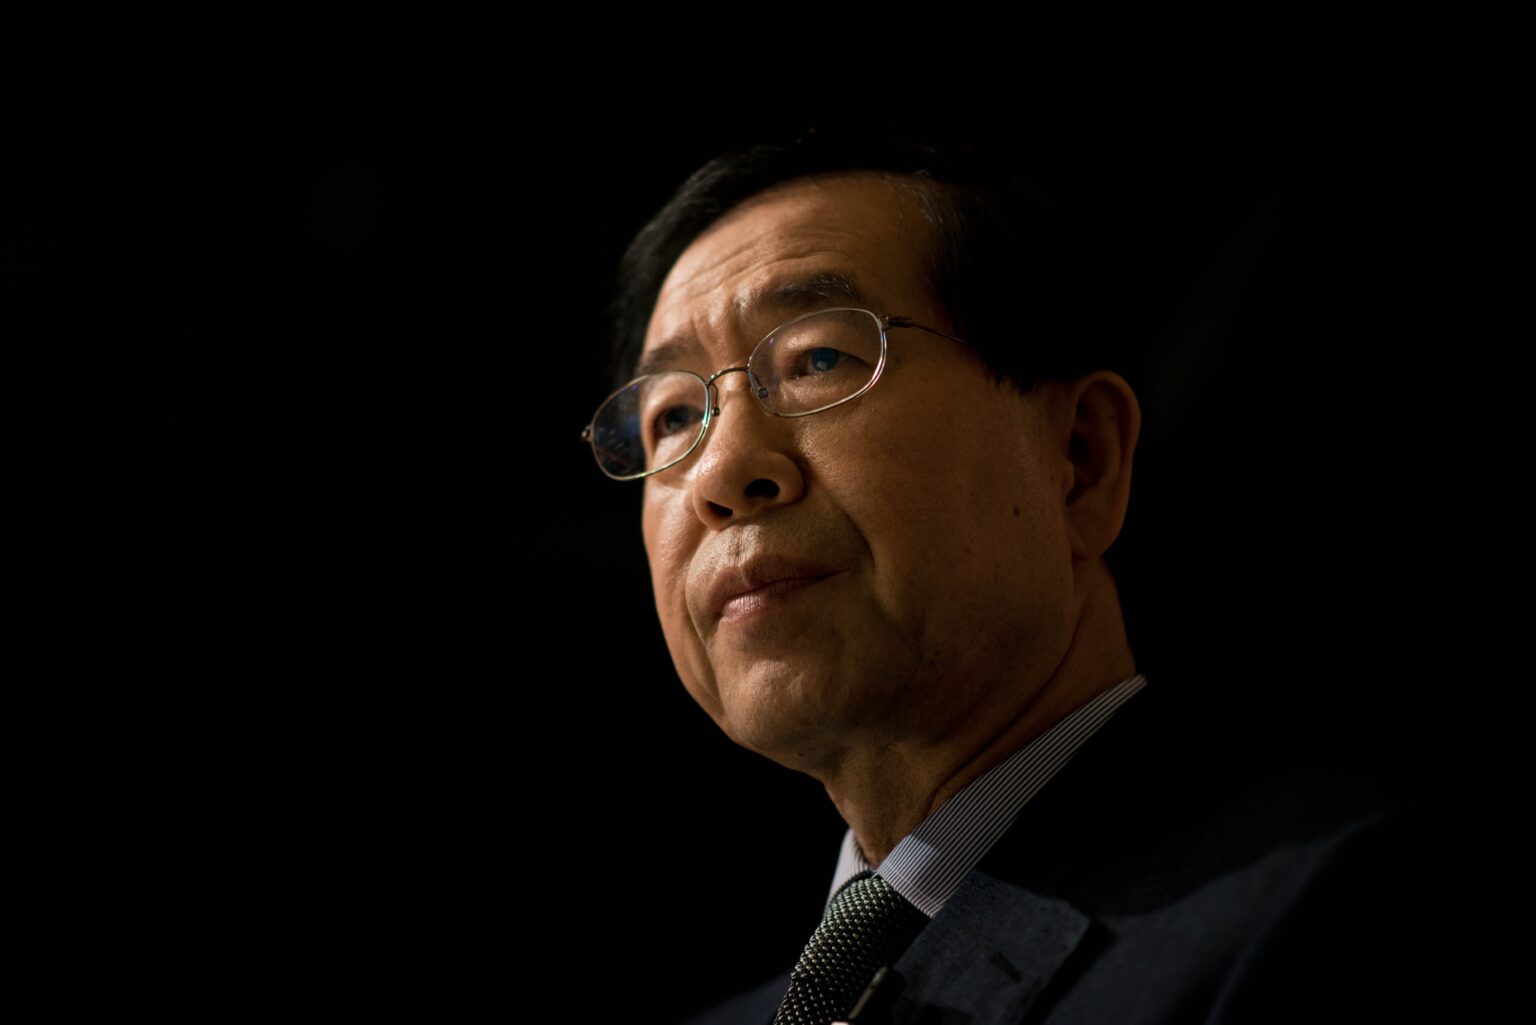 Presidente da Câmara de Seoul encontrado morto depois de ser acusado de assédio sexual